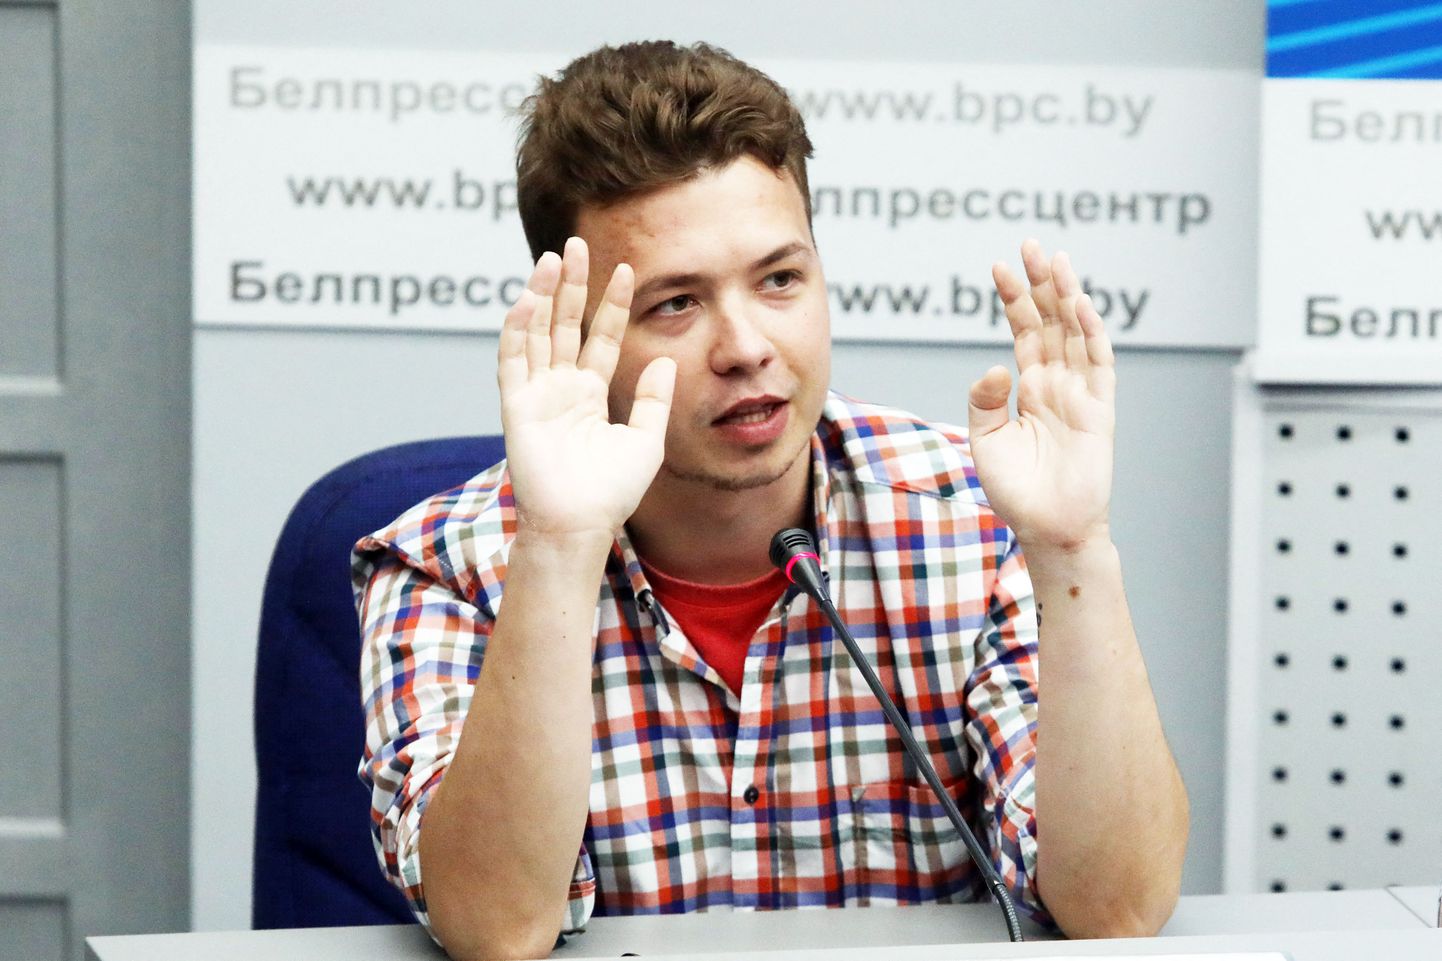 Роман Протасевич через несколько недель после ареста принимает участие в брифинге для журналистов и дипломатов, организованном Министерством иностранных дел Беларуси в Минске, 14 июня 2021 года.